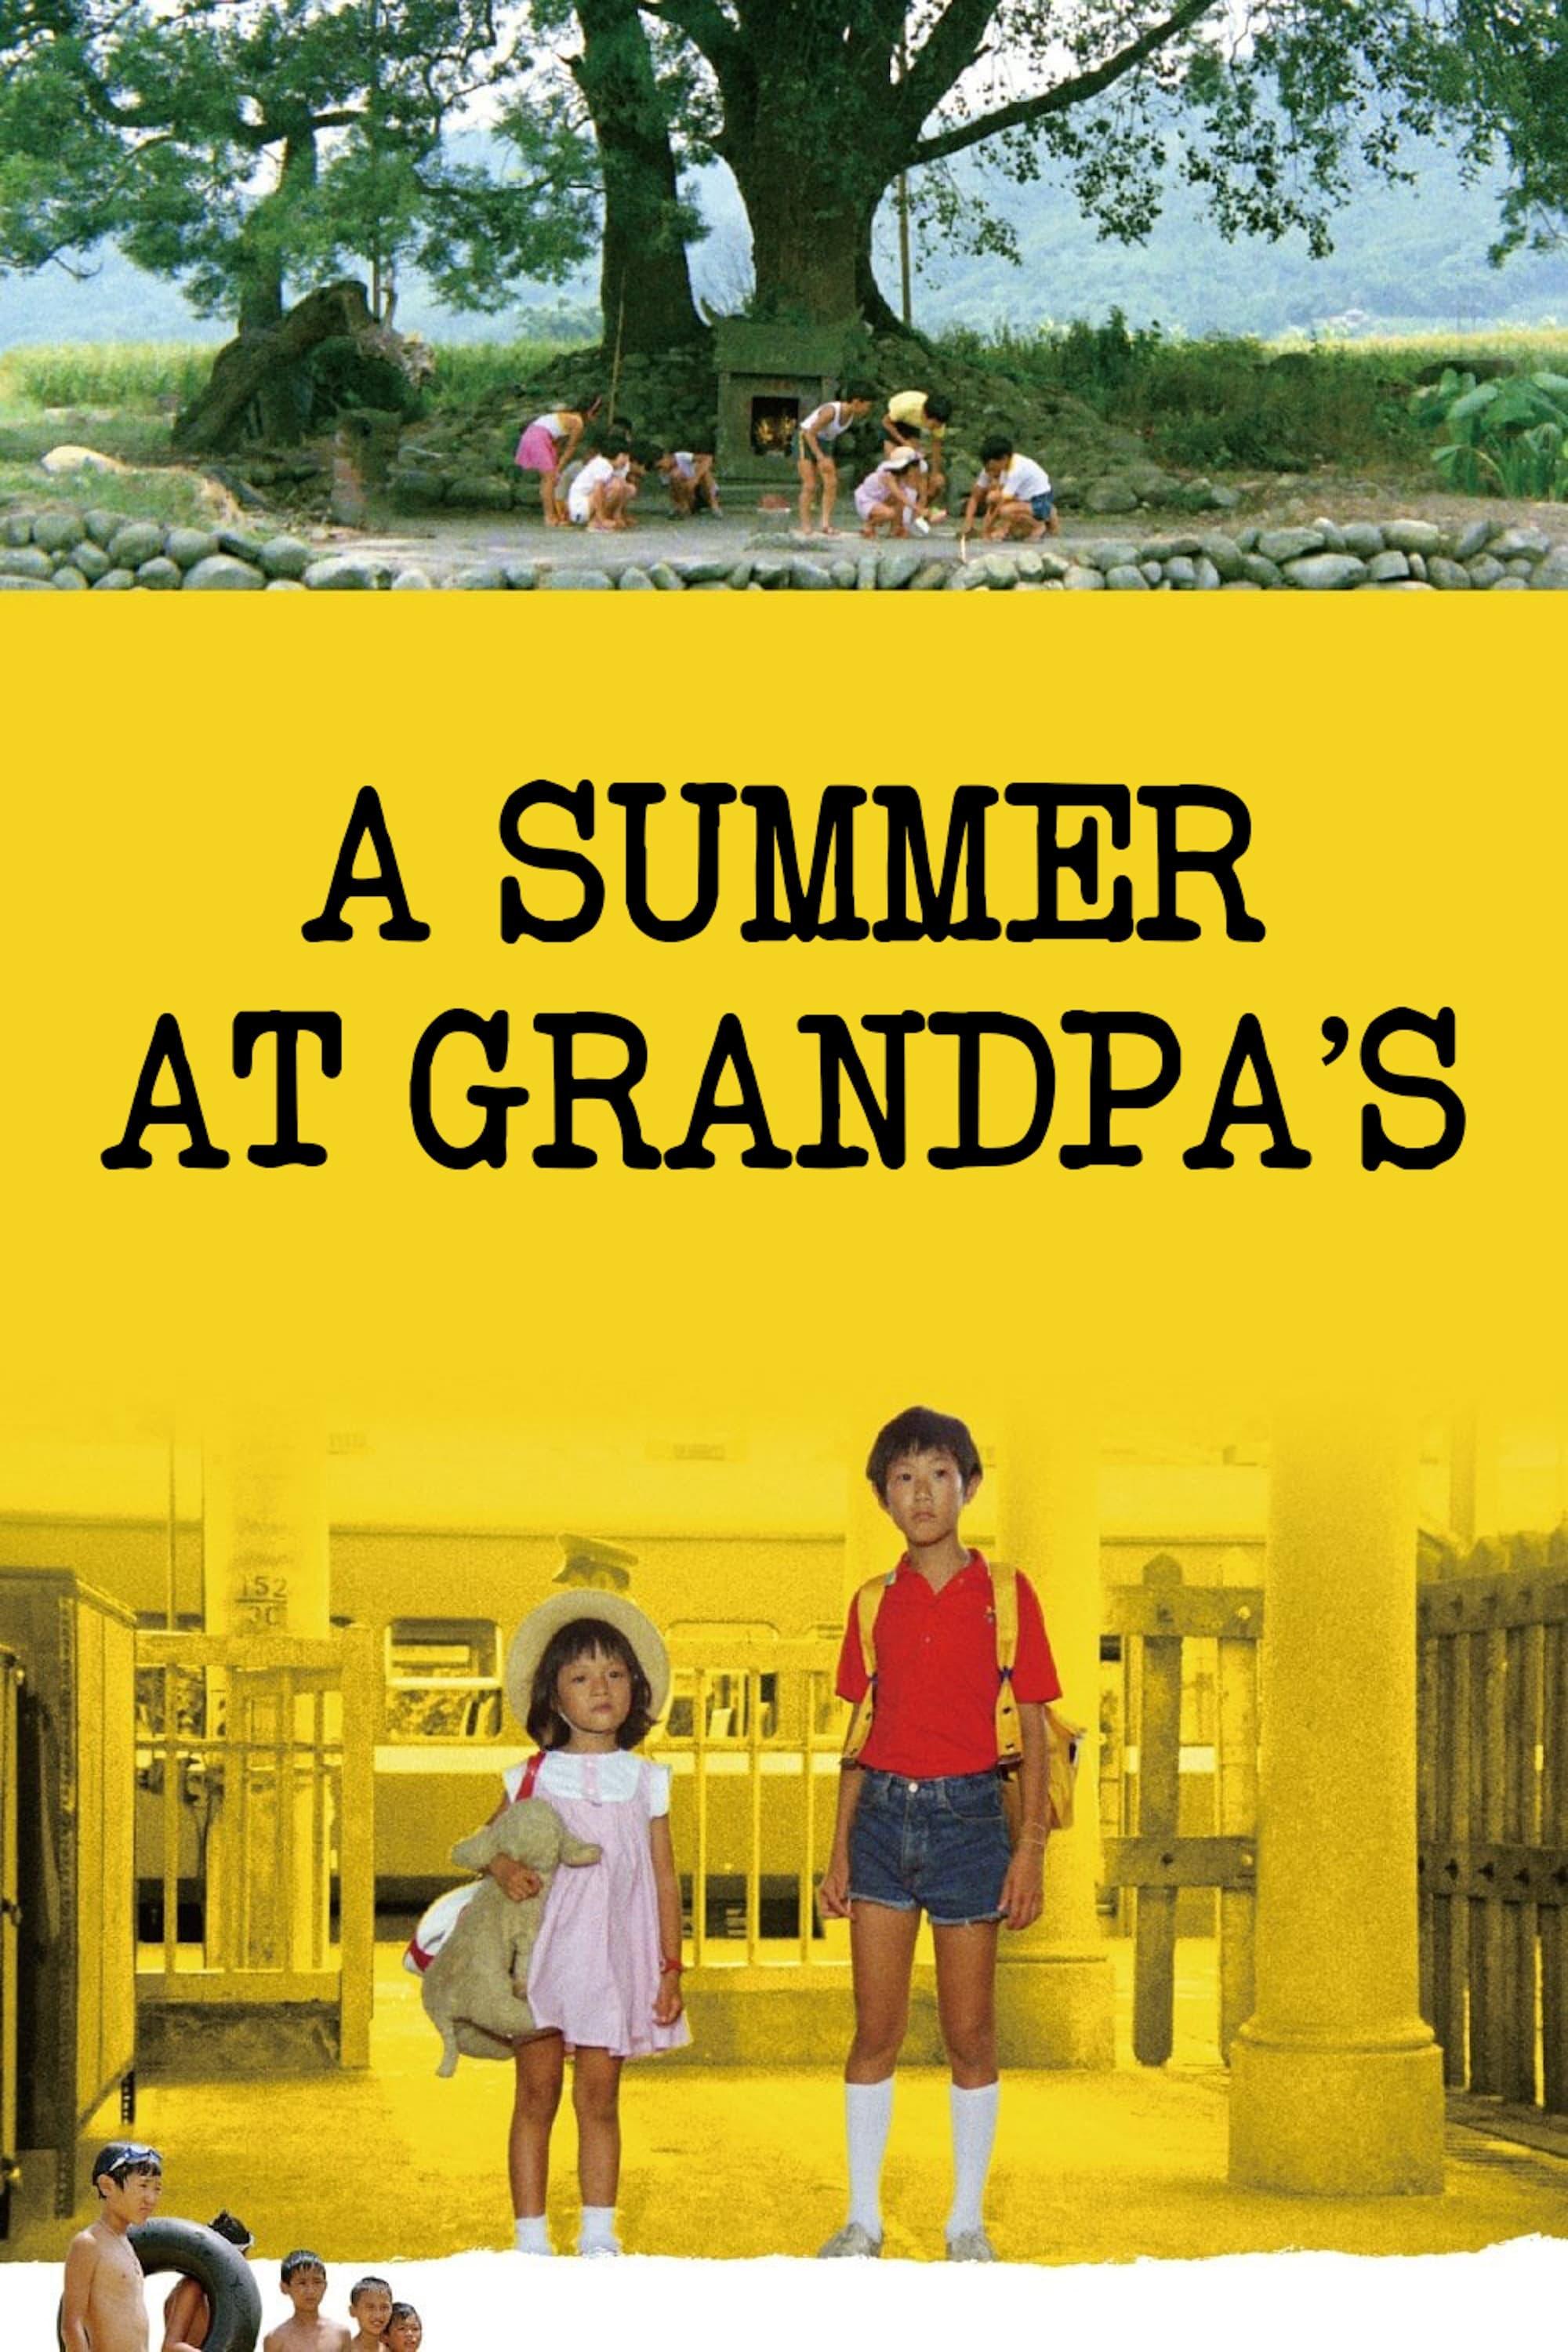 A Summer at Grandpa's poster